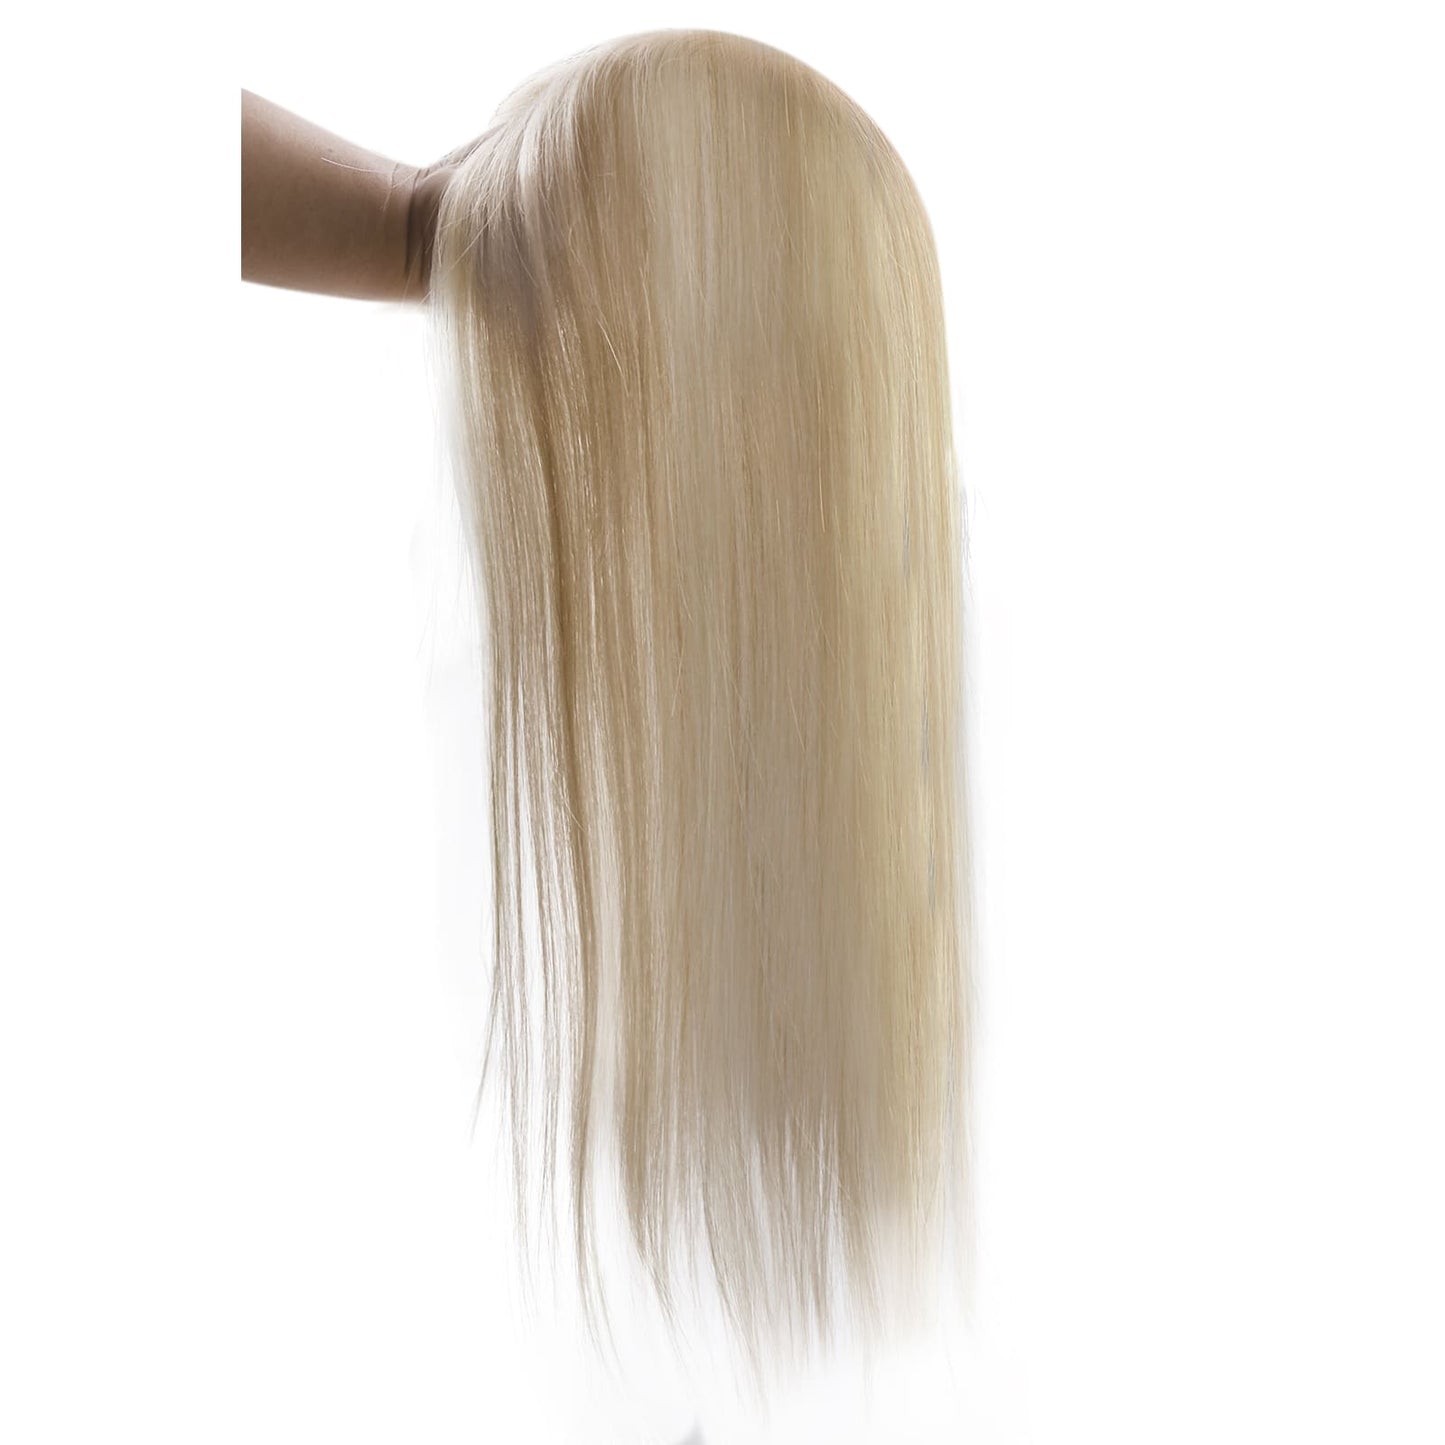 white women toupee 100% human hair